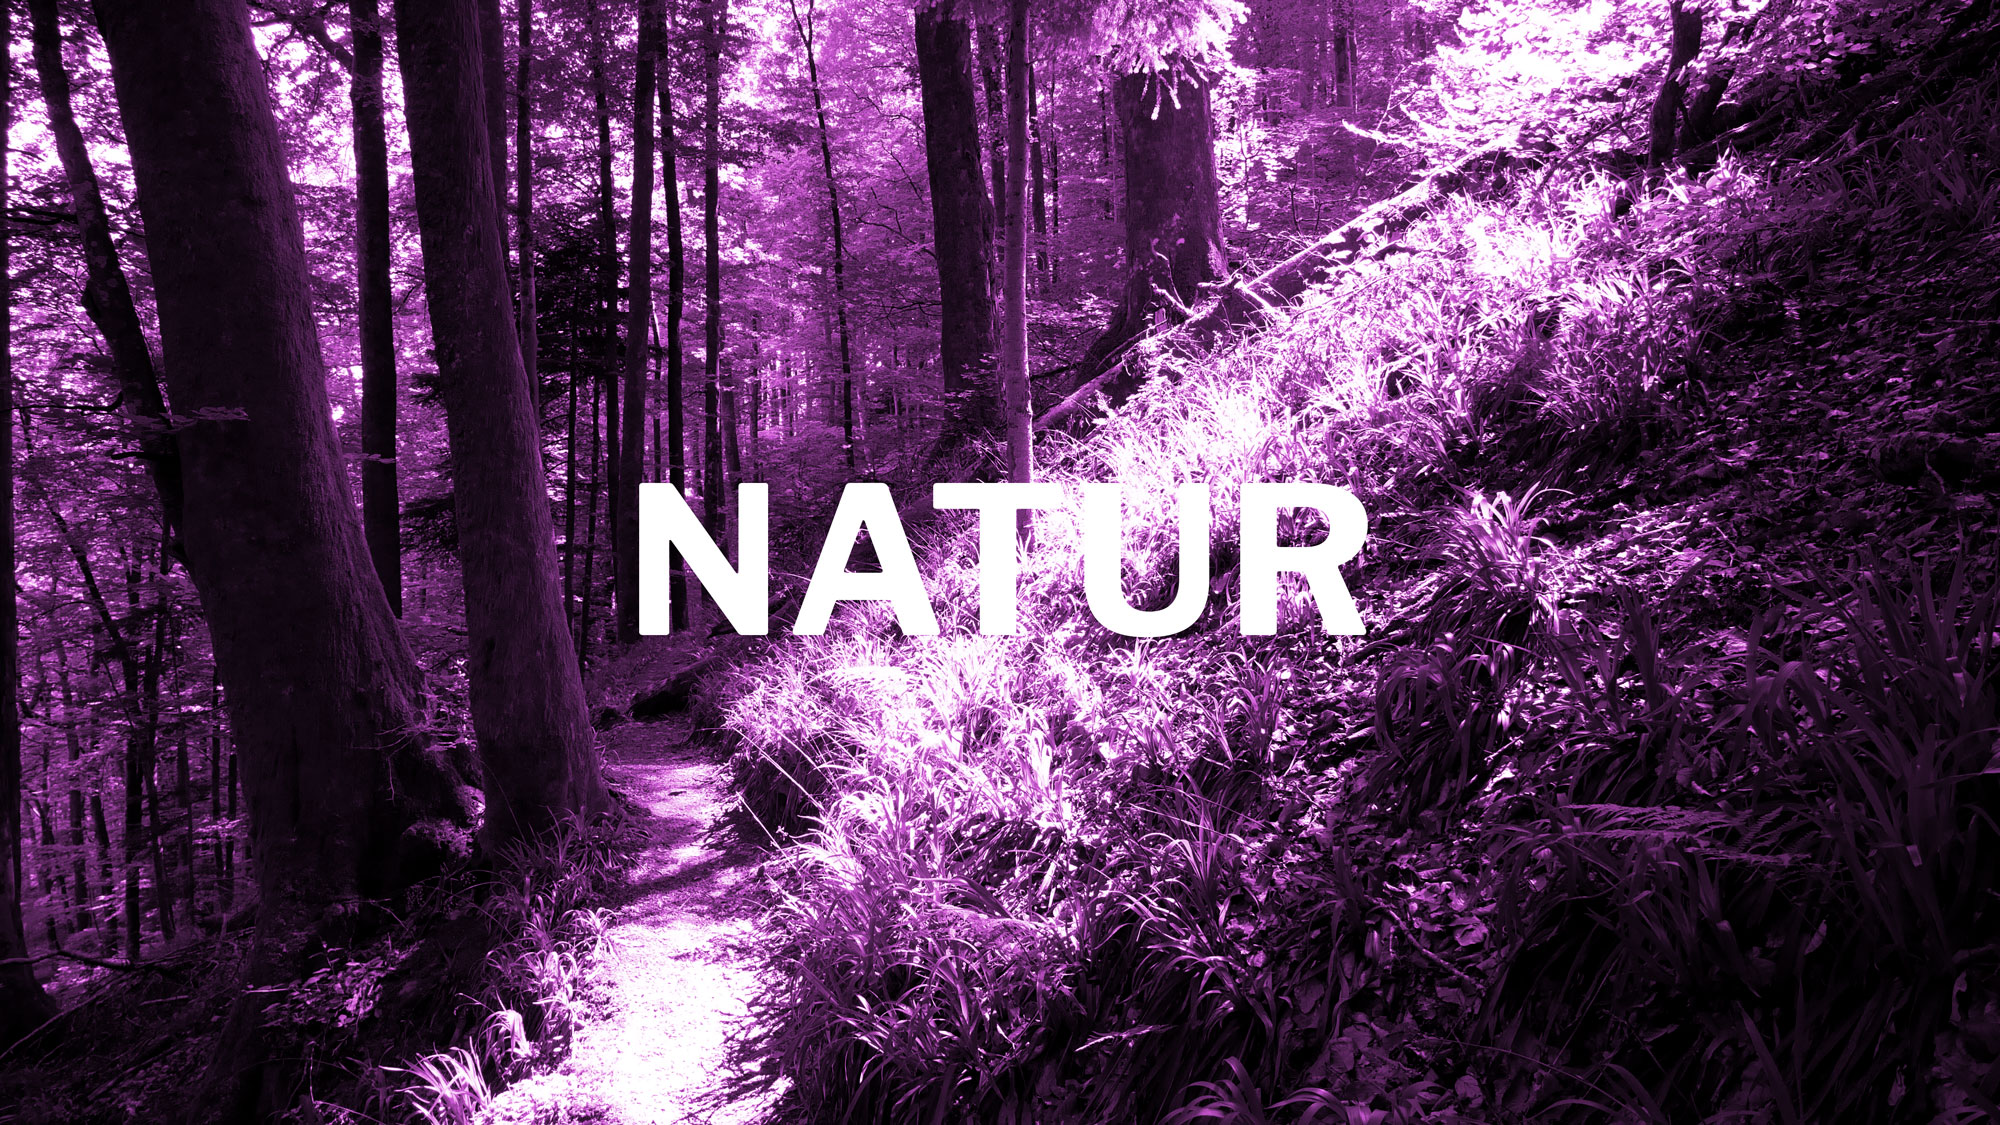 Das Bild zur Gewalt 'Natur'. Es zeigt einen Bannwaldabschnitt mit der Bildüberschrift: Natur.